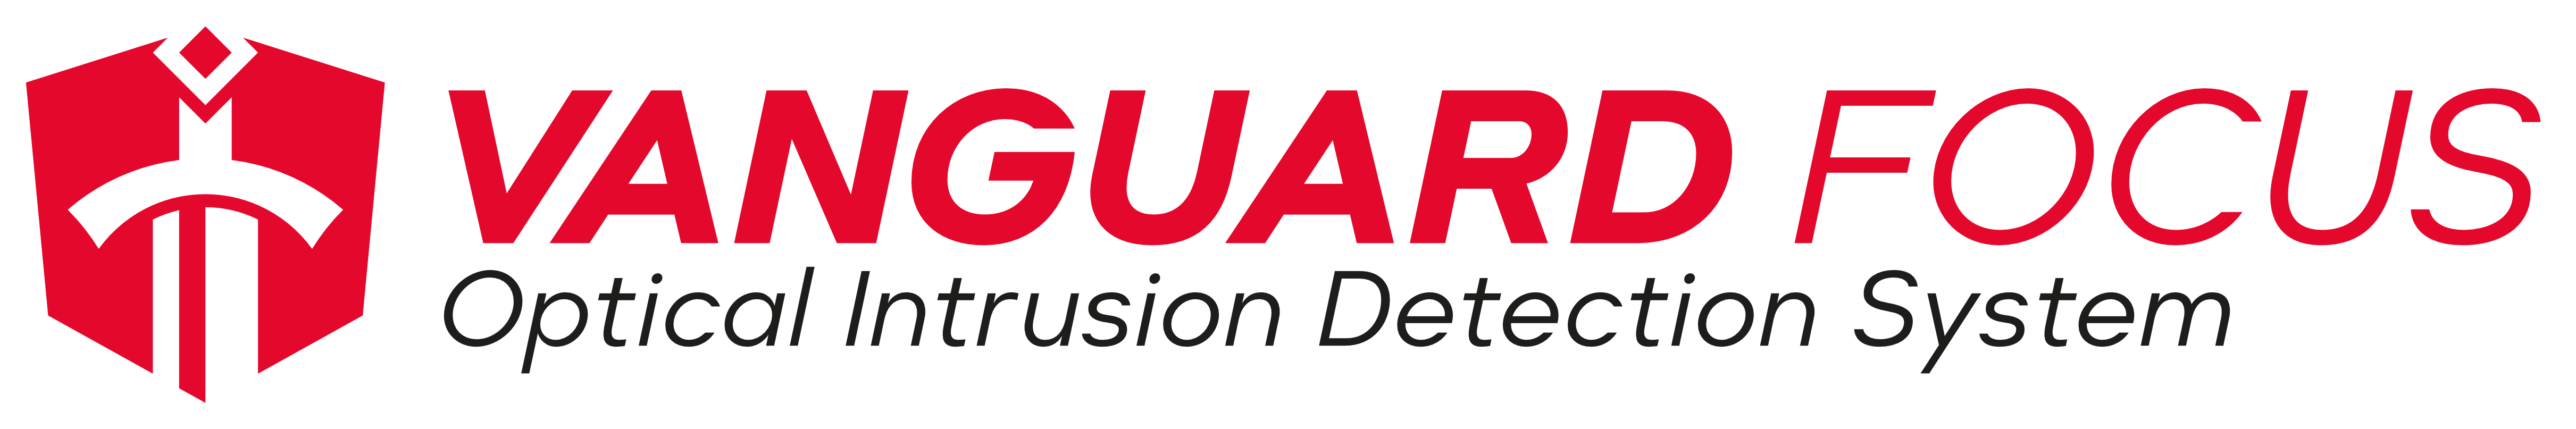 Vanguard Focus -Full Logo